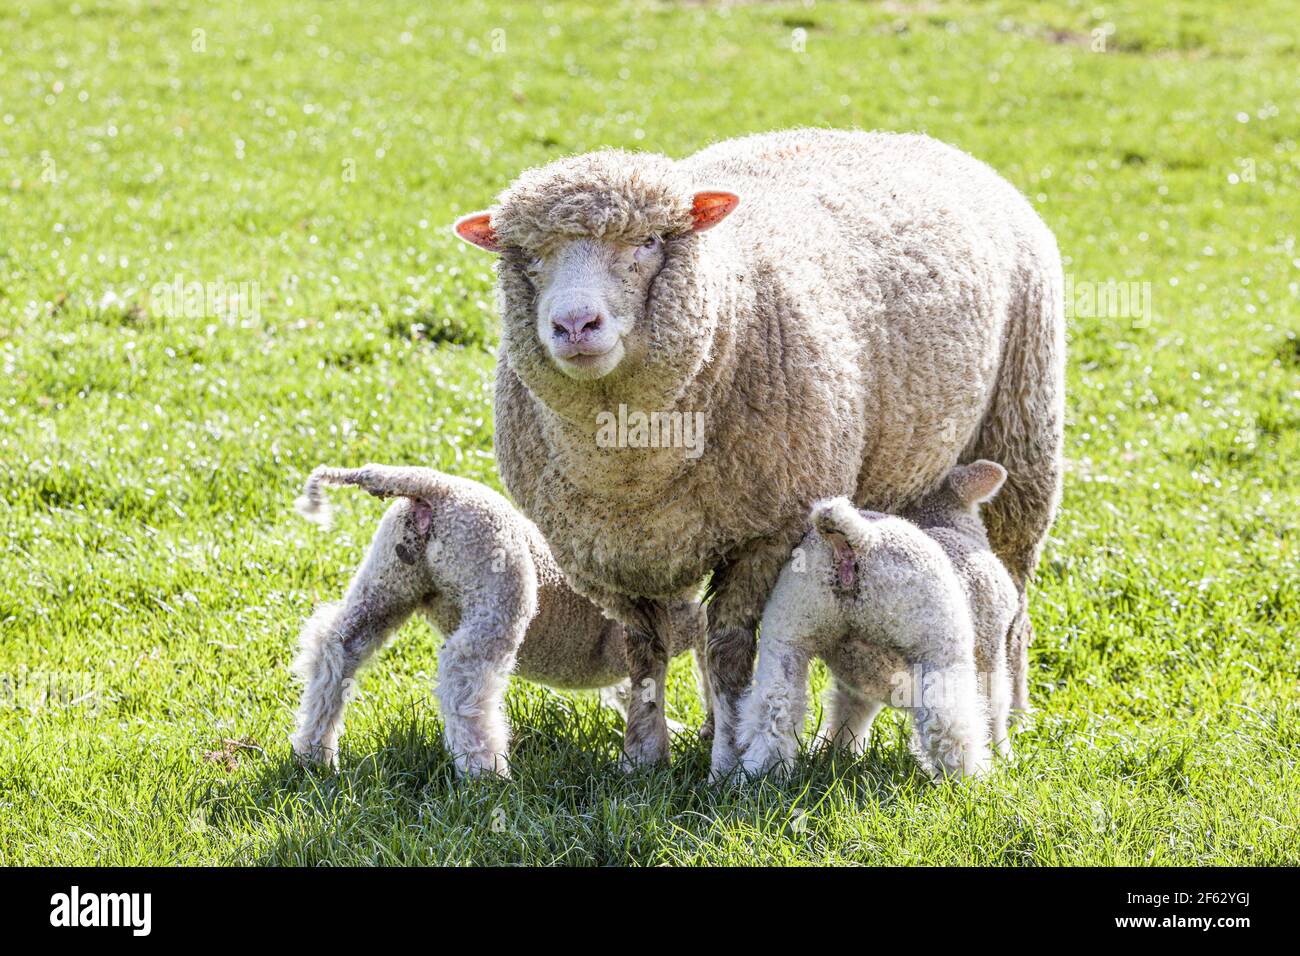 Una oveja Cotswold (oveja) succionando corderos gemelos en el pueblo Cotswold de Middle Duntisbourne, Gloucestershire, Reino Unido Foto de stock